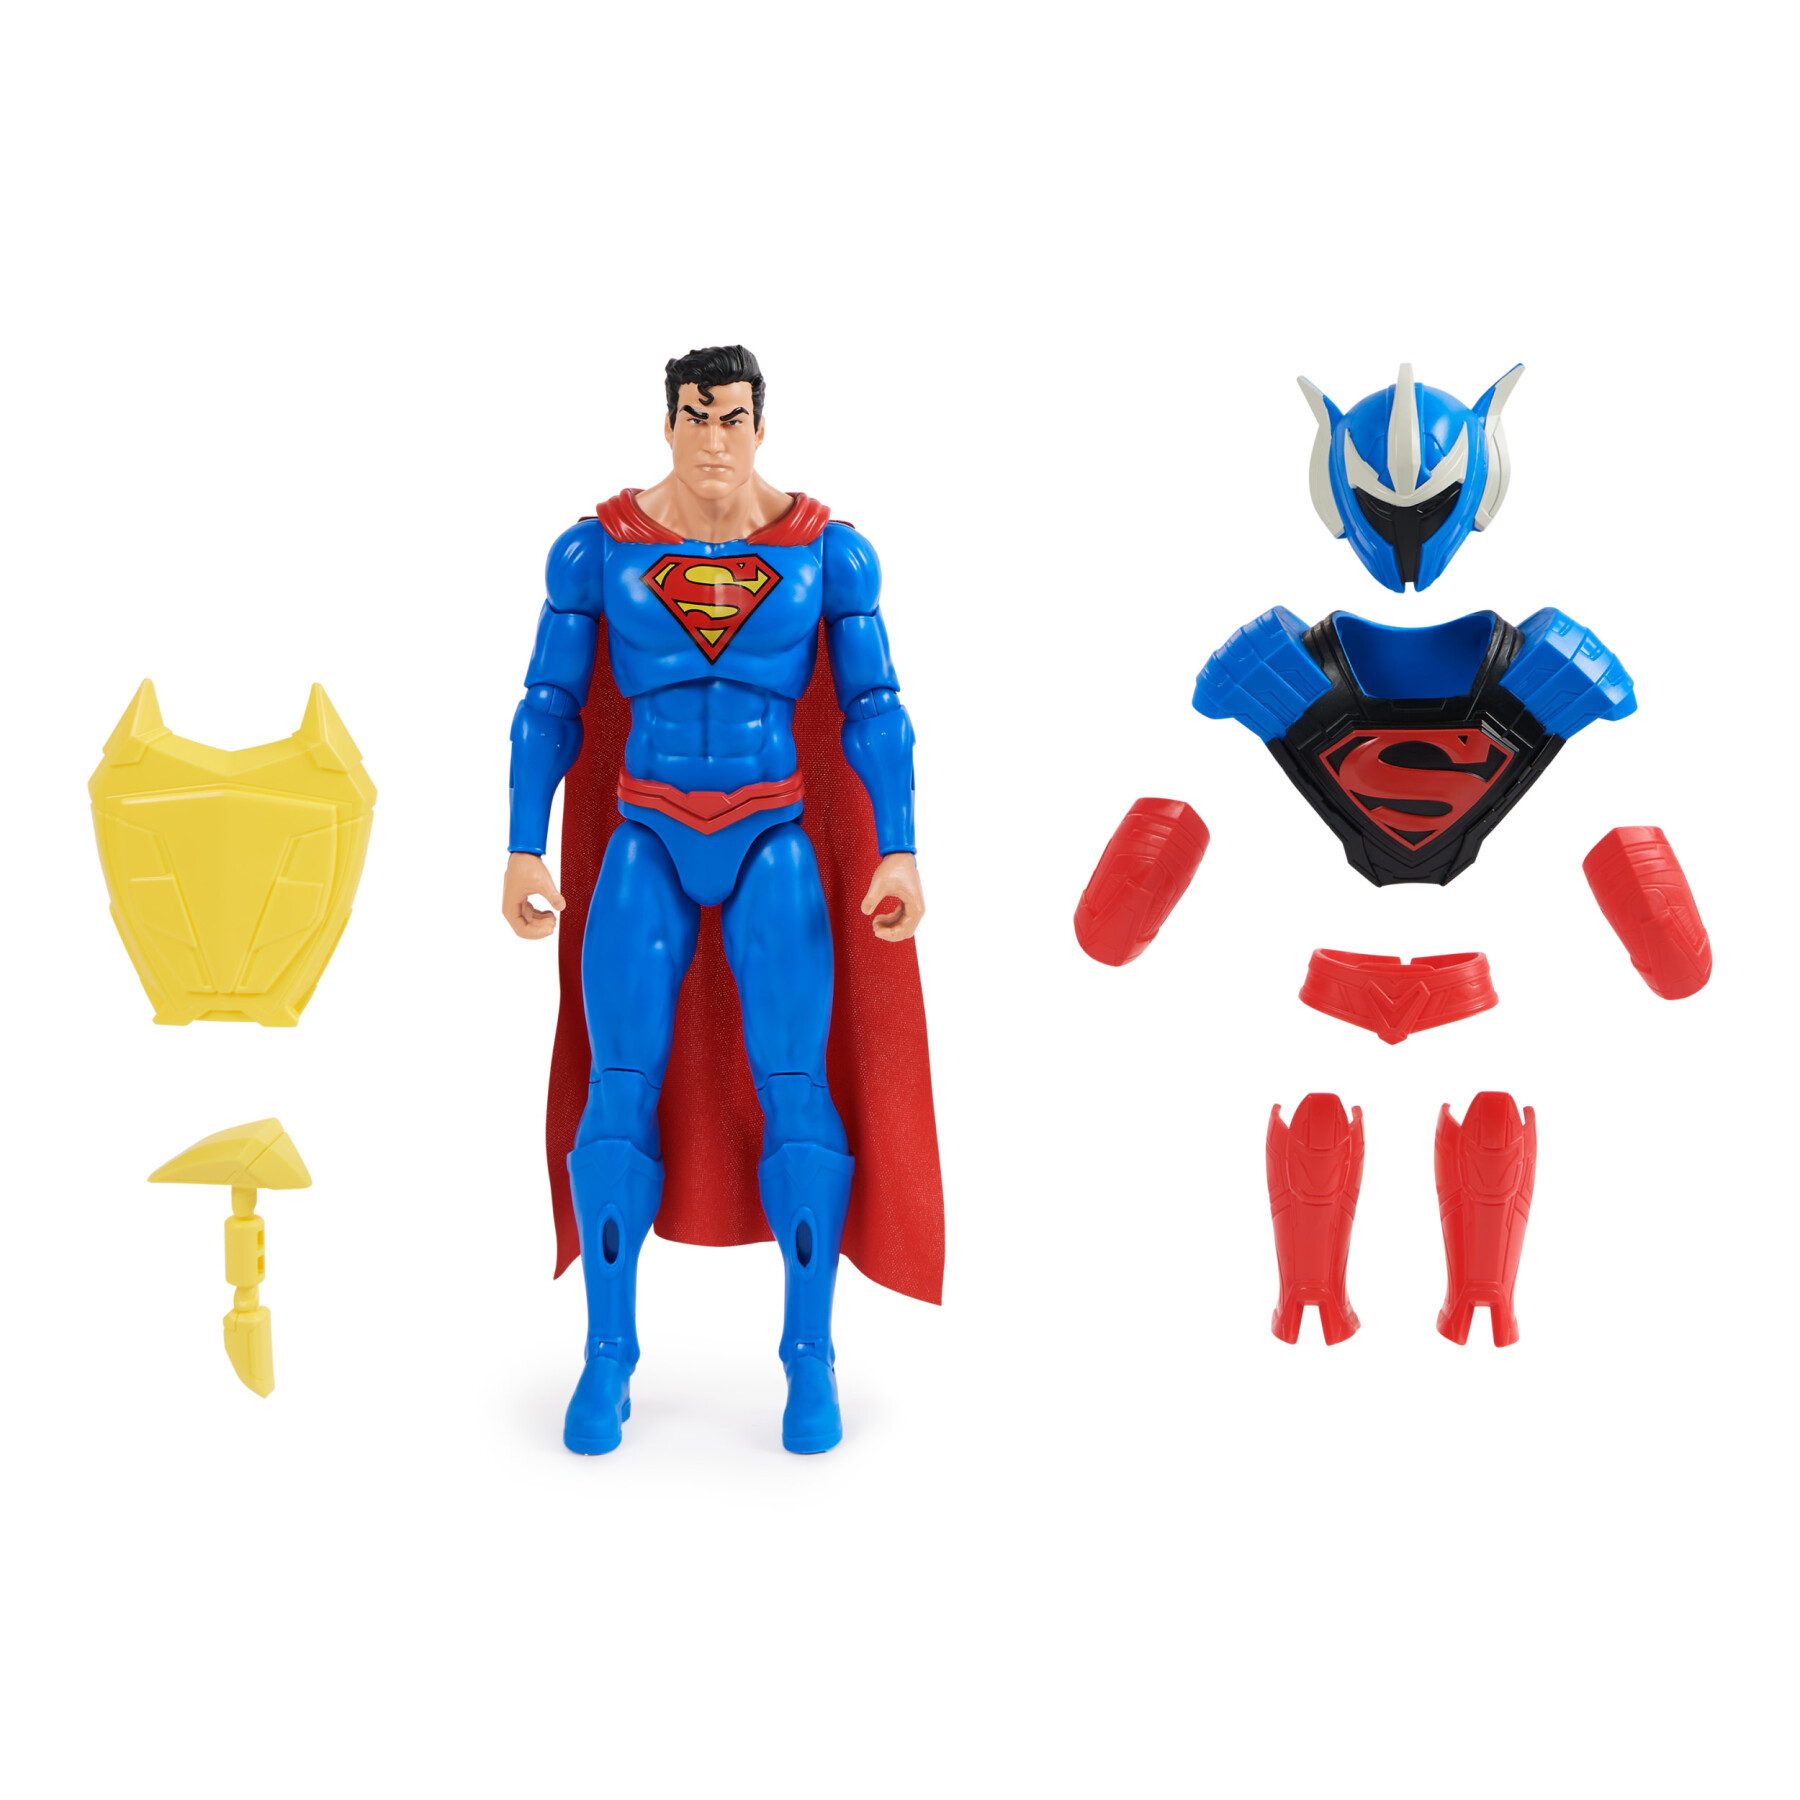 Dc comics, action figure dc adventures, superman giocattolo in scala, personaggio superman alto 30 cm, supereroe con 9 accessori e 17 punti di articolazione, giochi per bambini e bambine, 4+ anni - DC COMICS